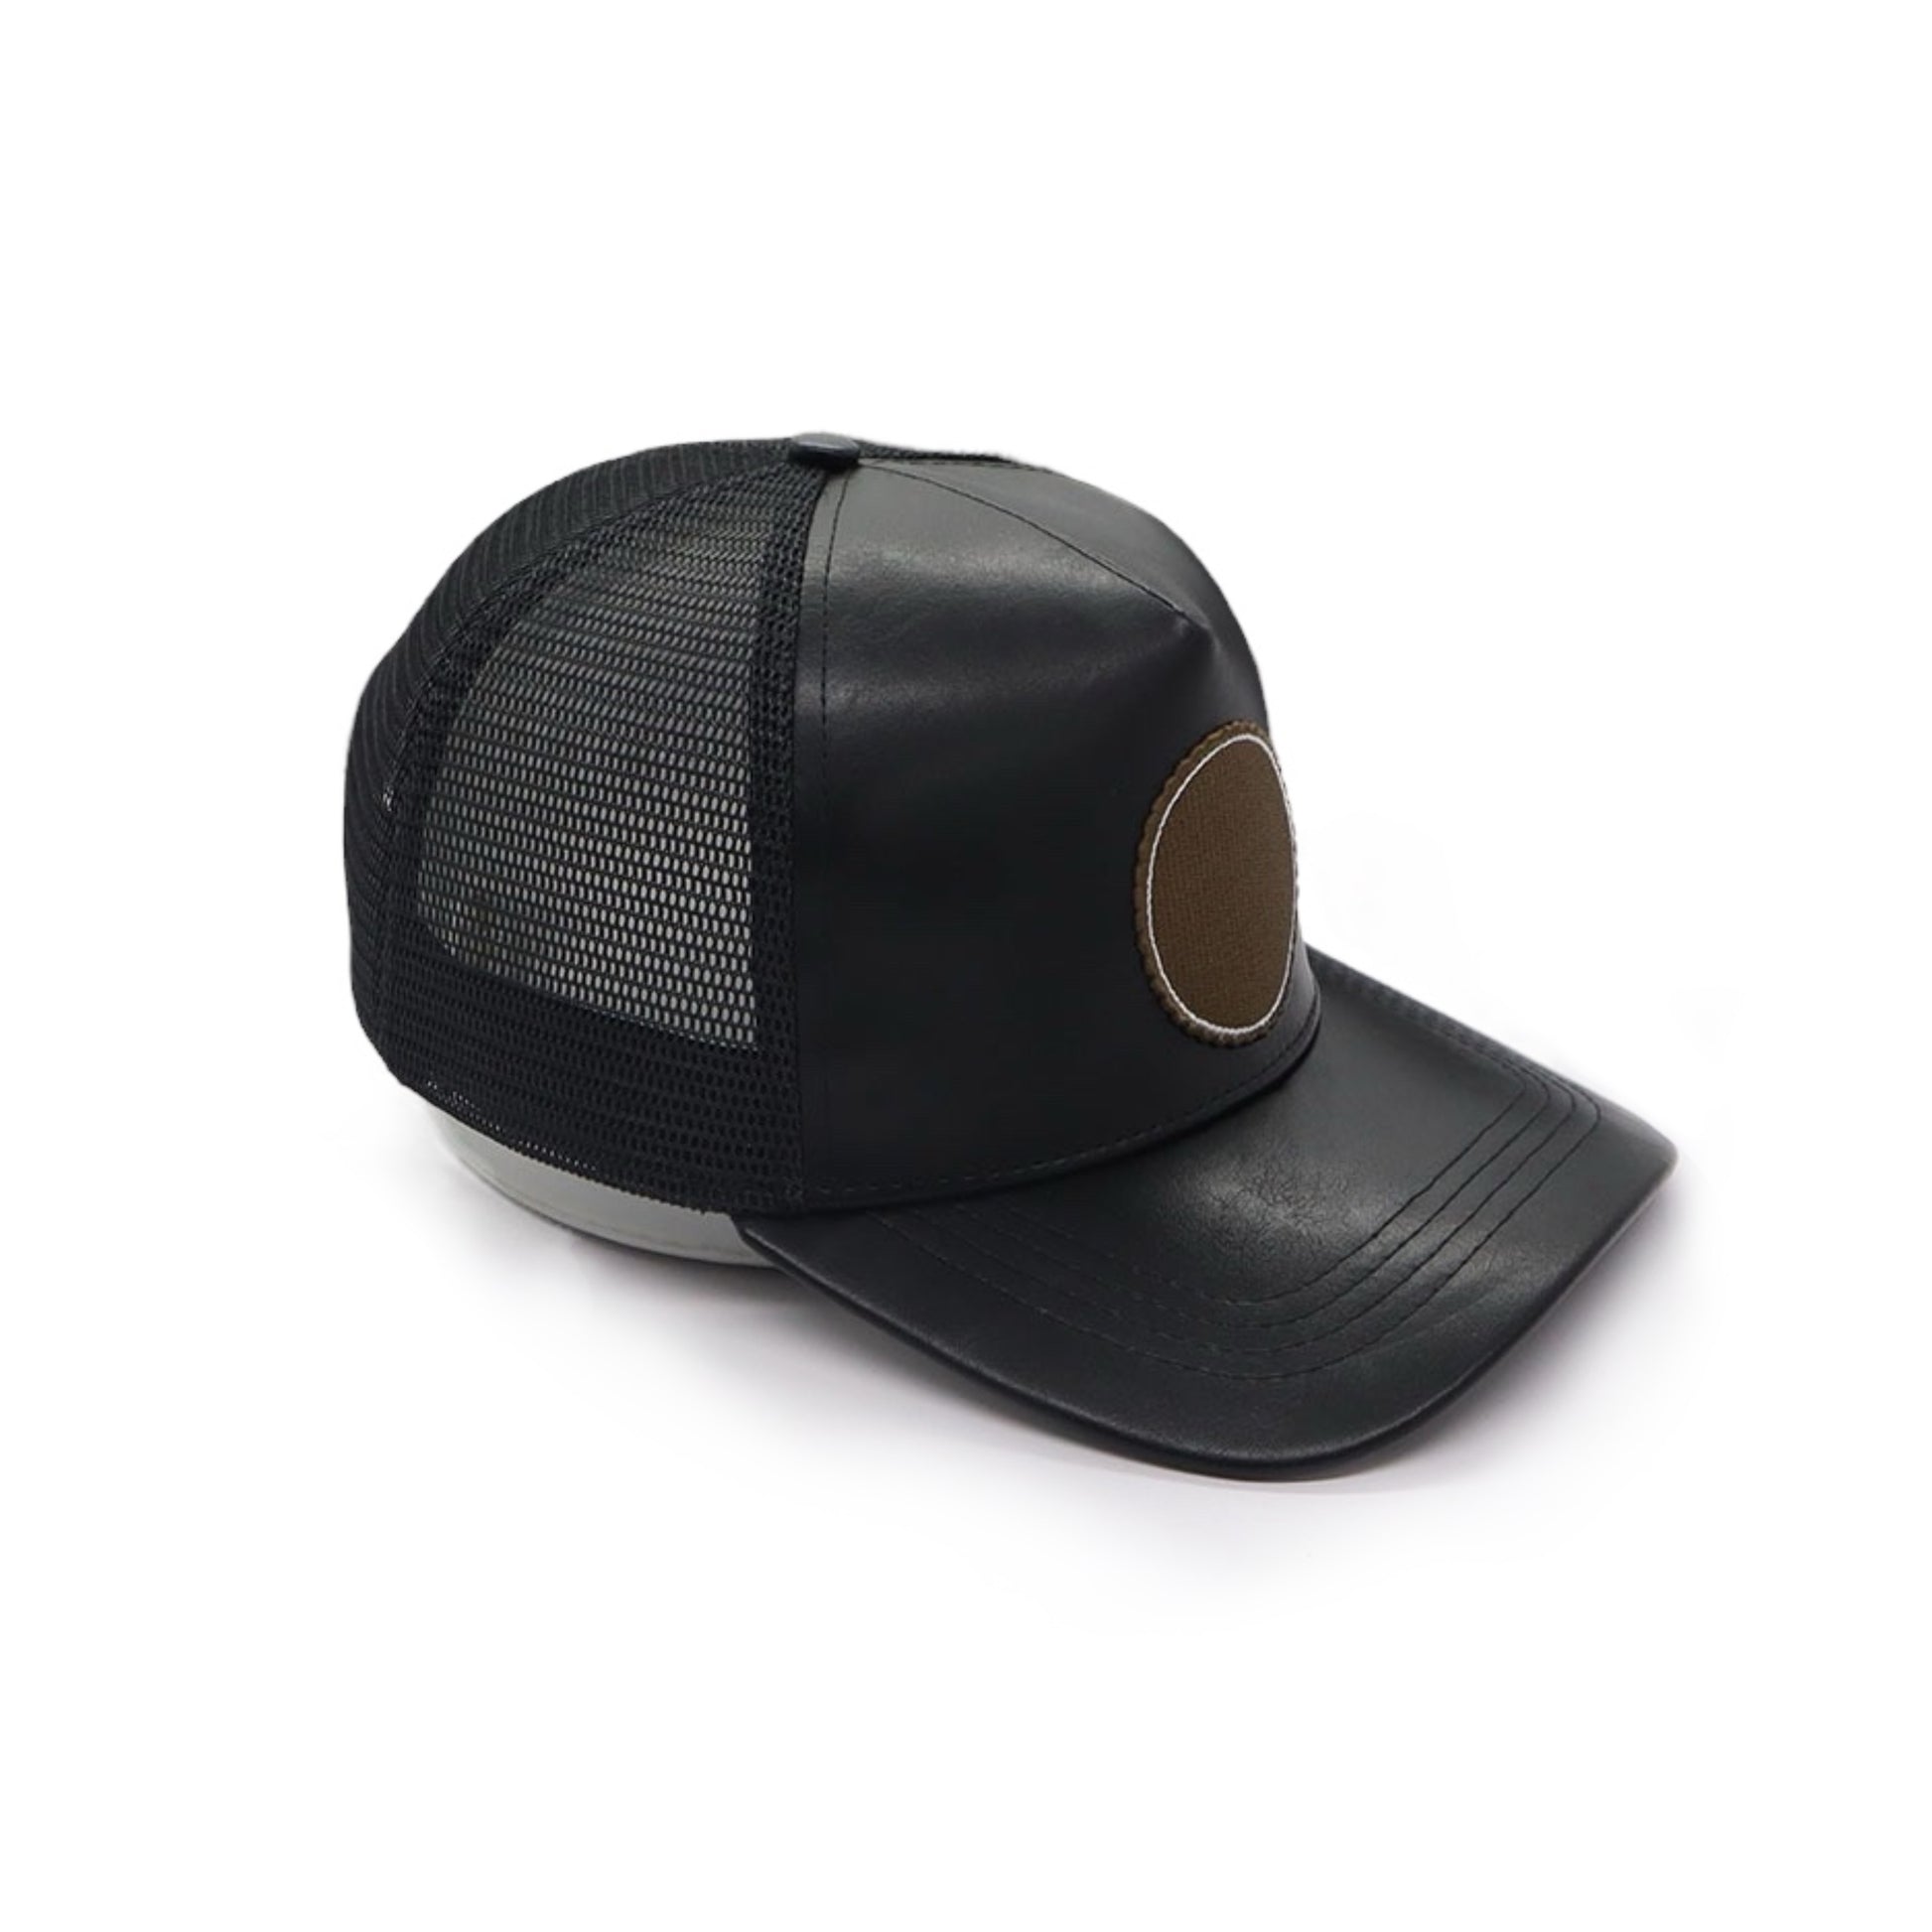 Mr.LIMOU - haut de gamme casquette noir cuir similicuir Eclipse Ebene 1